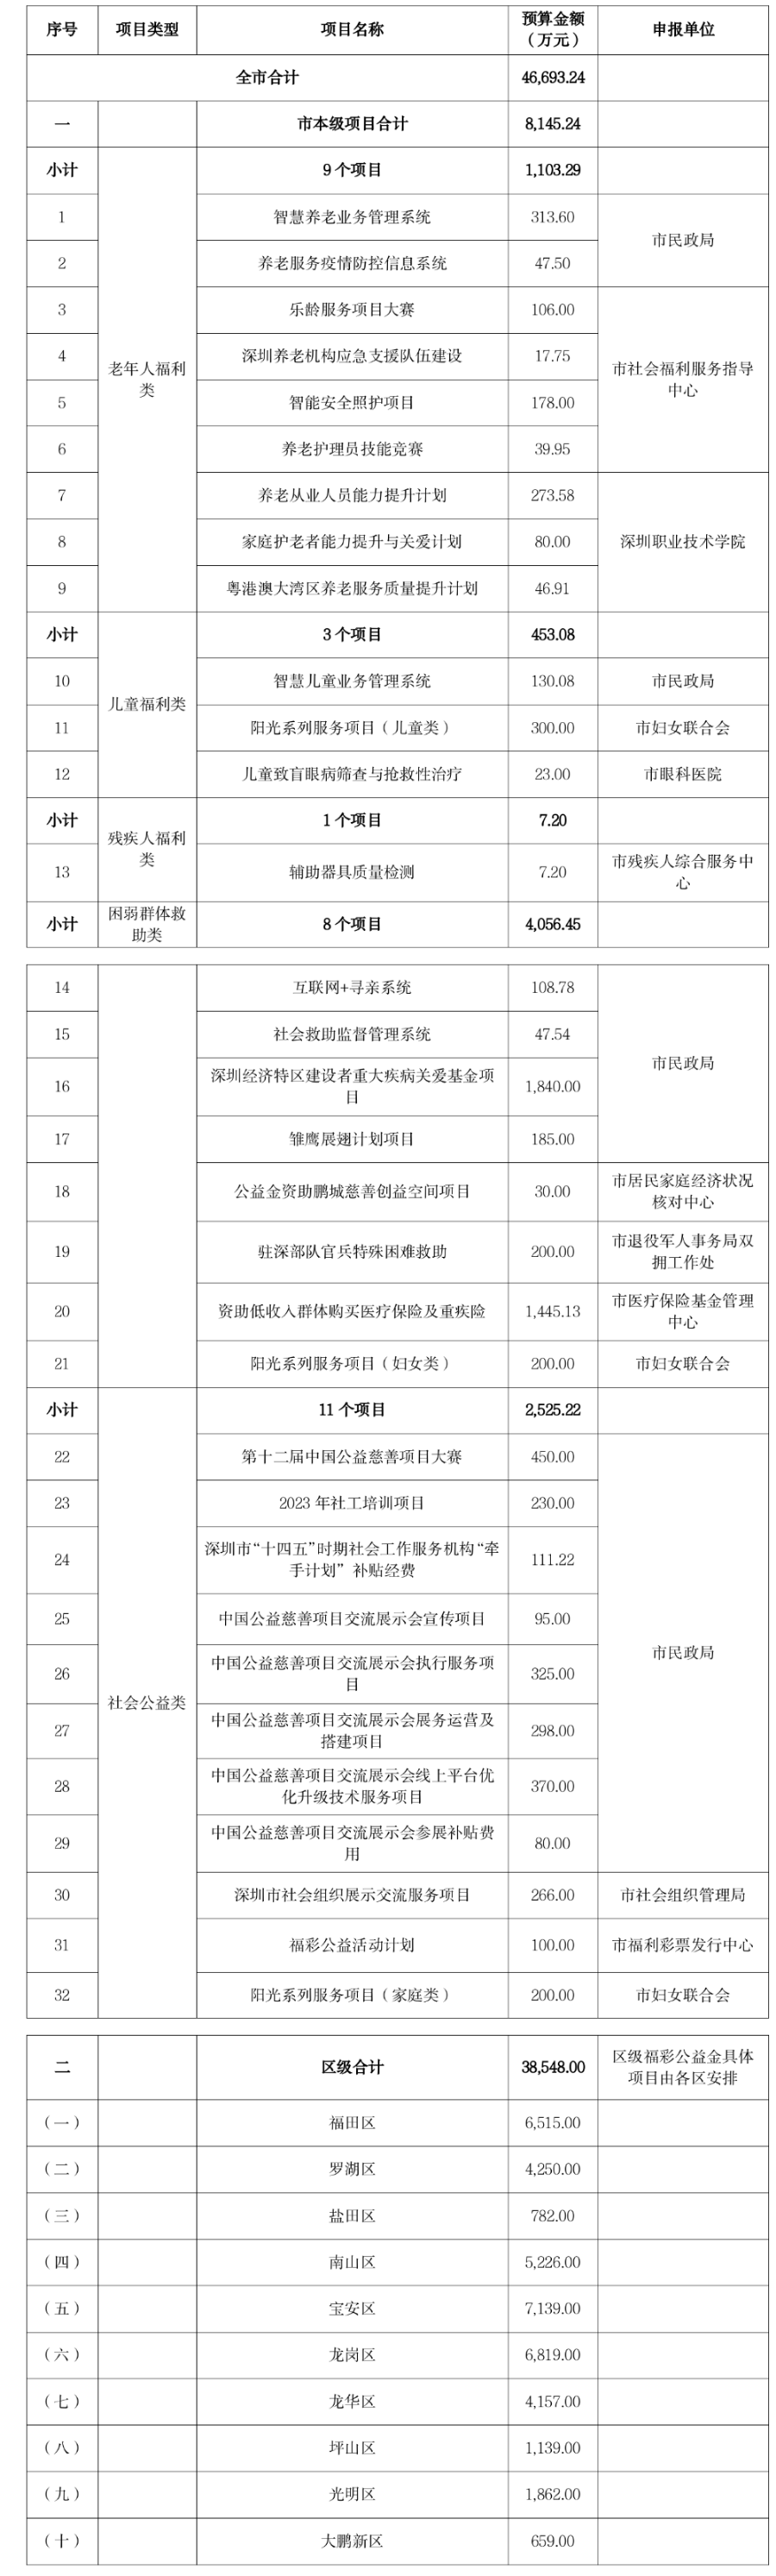 2023年度深圳市福利彩票公益金预算安排情况公示 (9).png